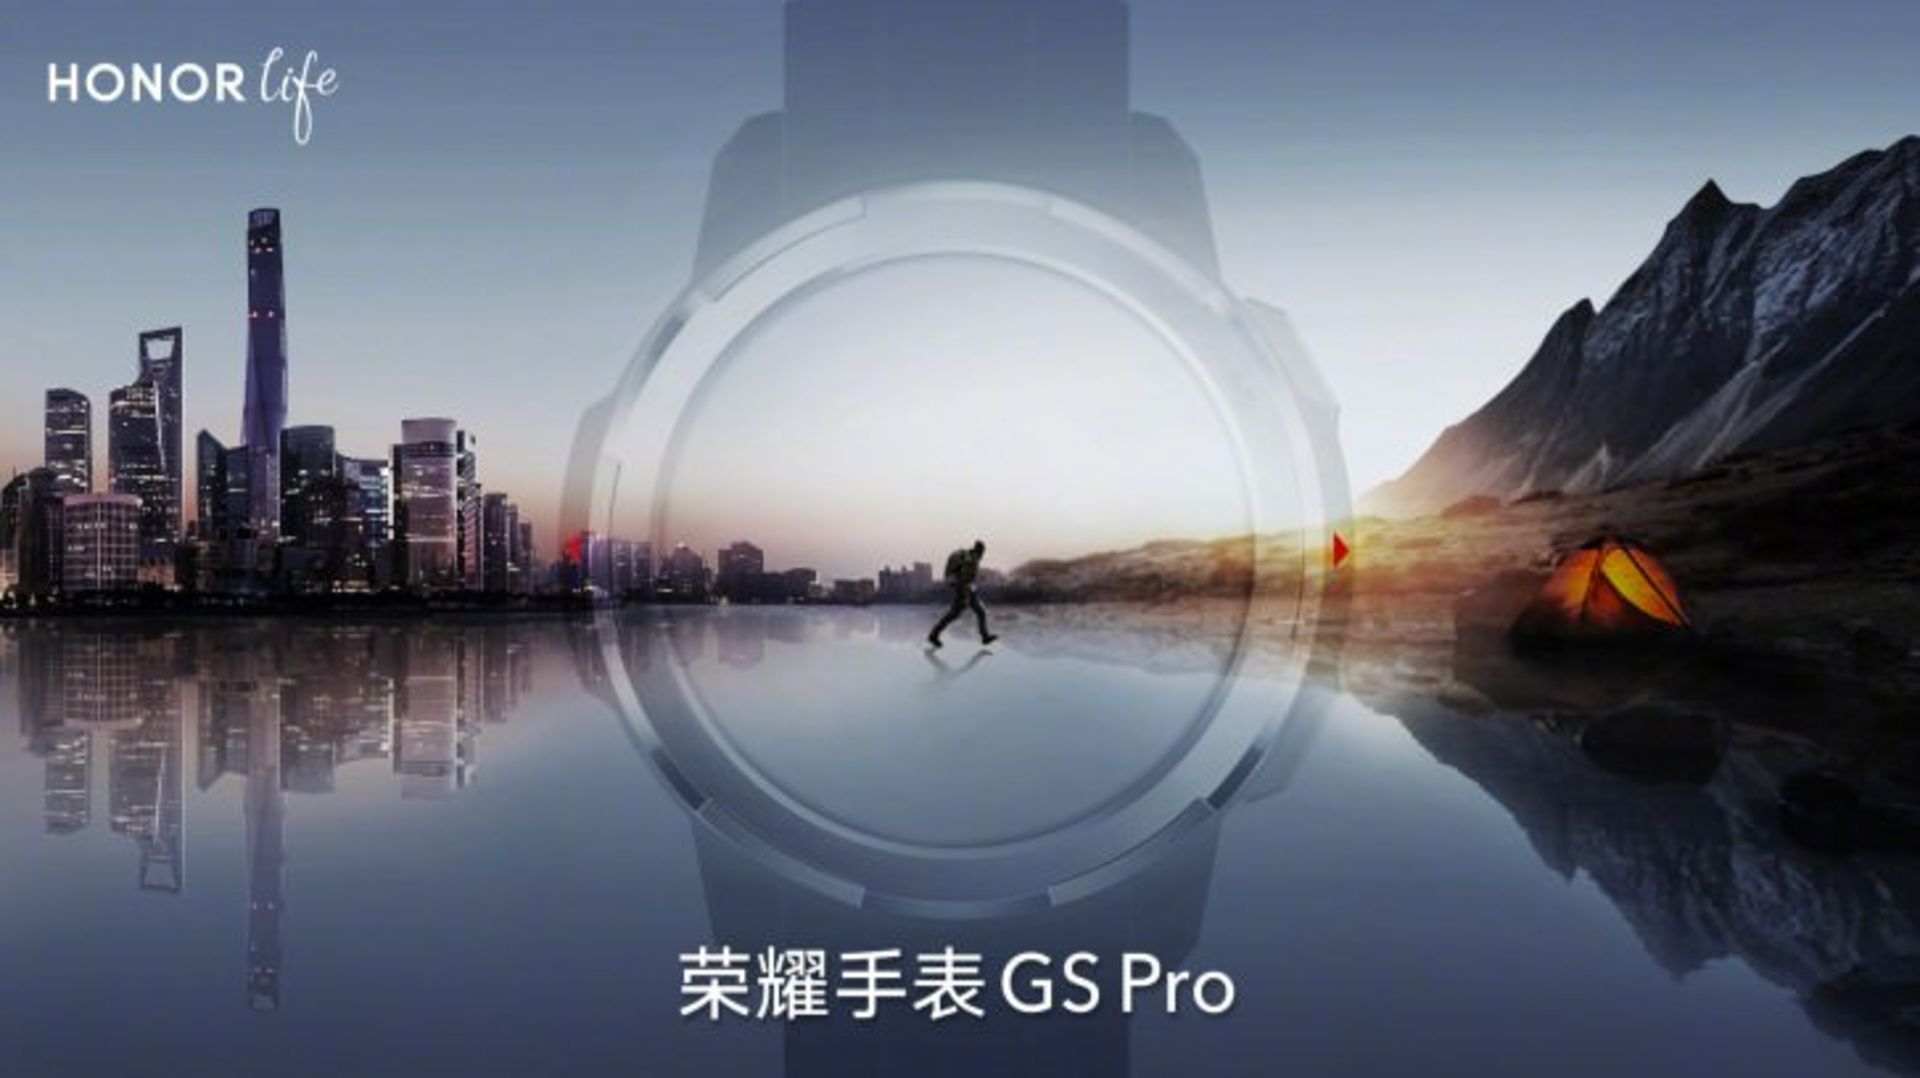 مرجع متخصصين ايران آنر واچ جي اس پرو / Honor Watch GS Pro